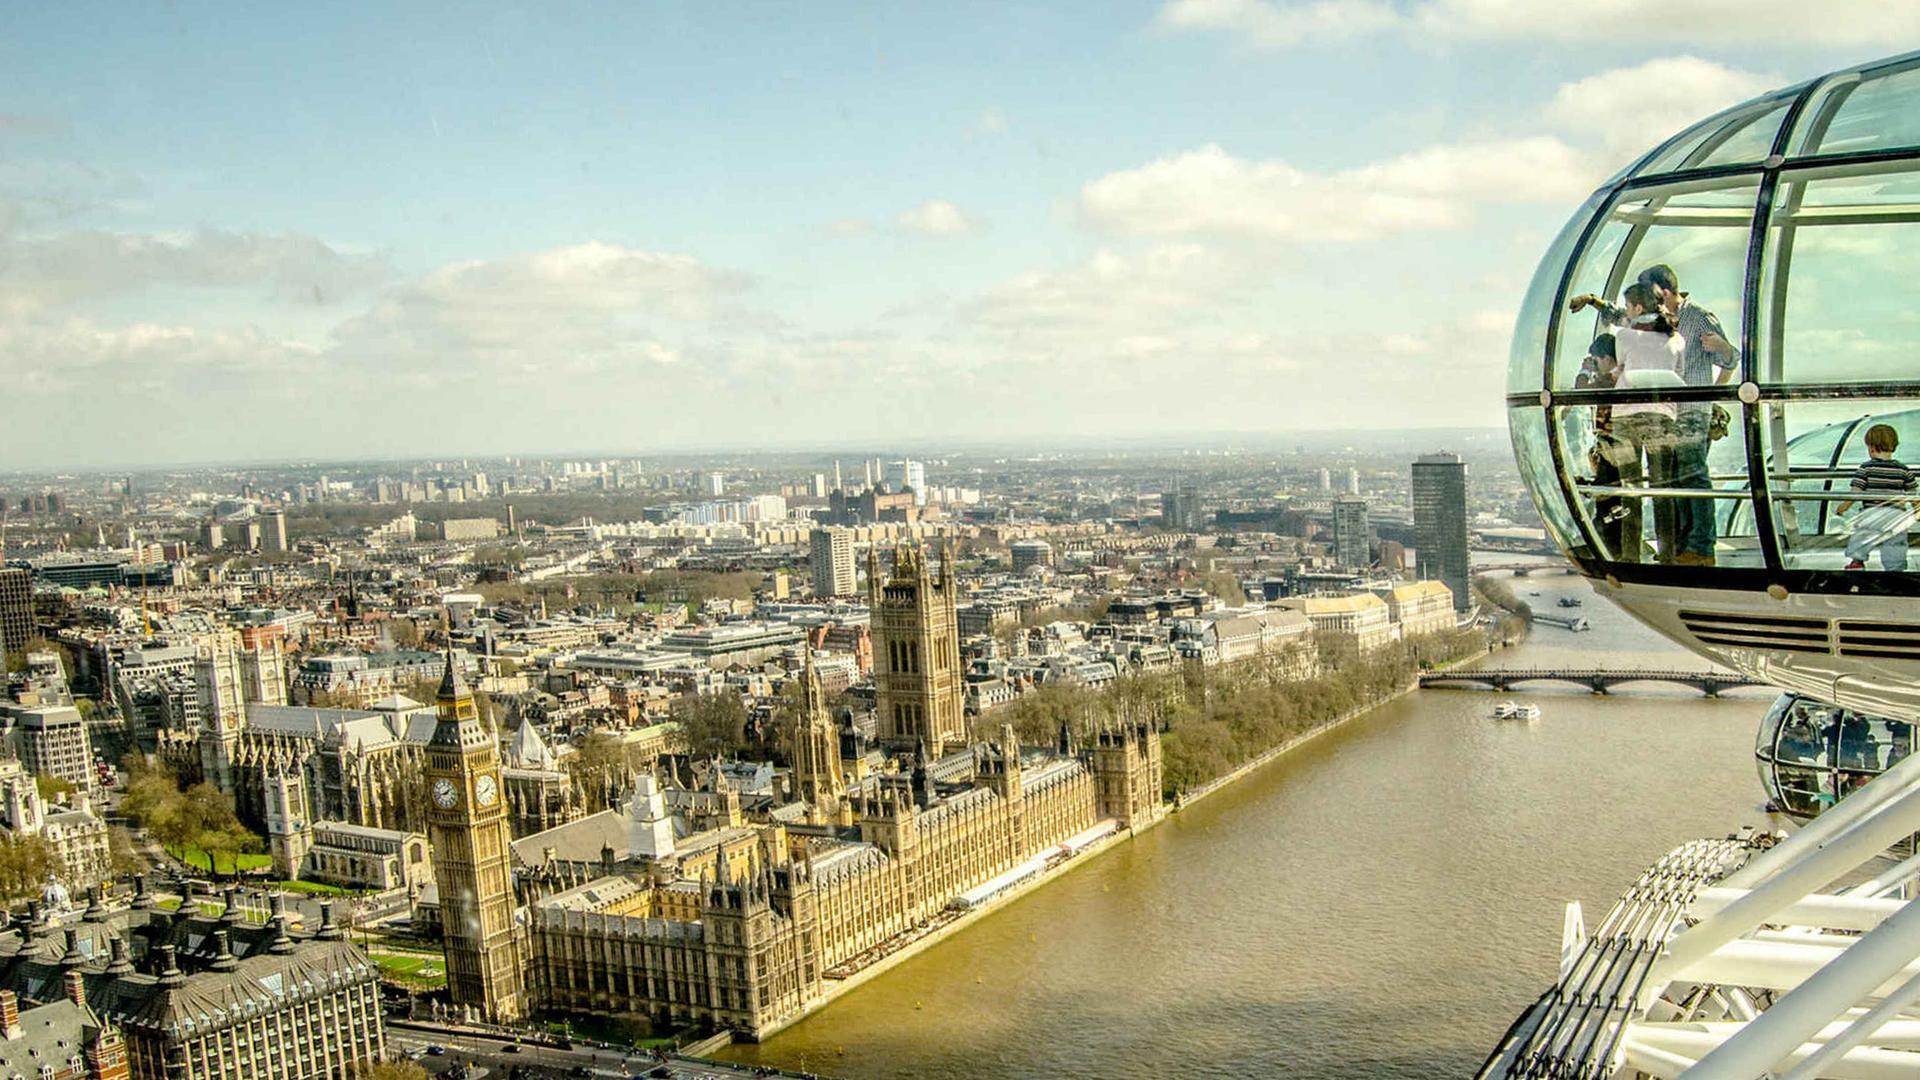 The London Eye Tour Guide